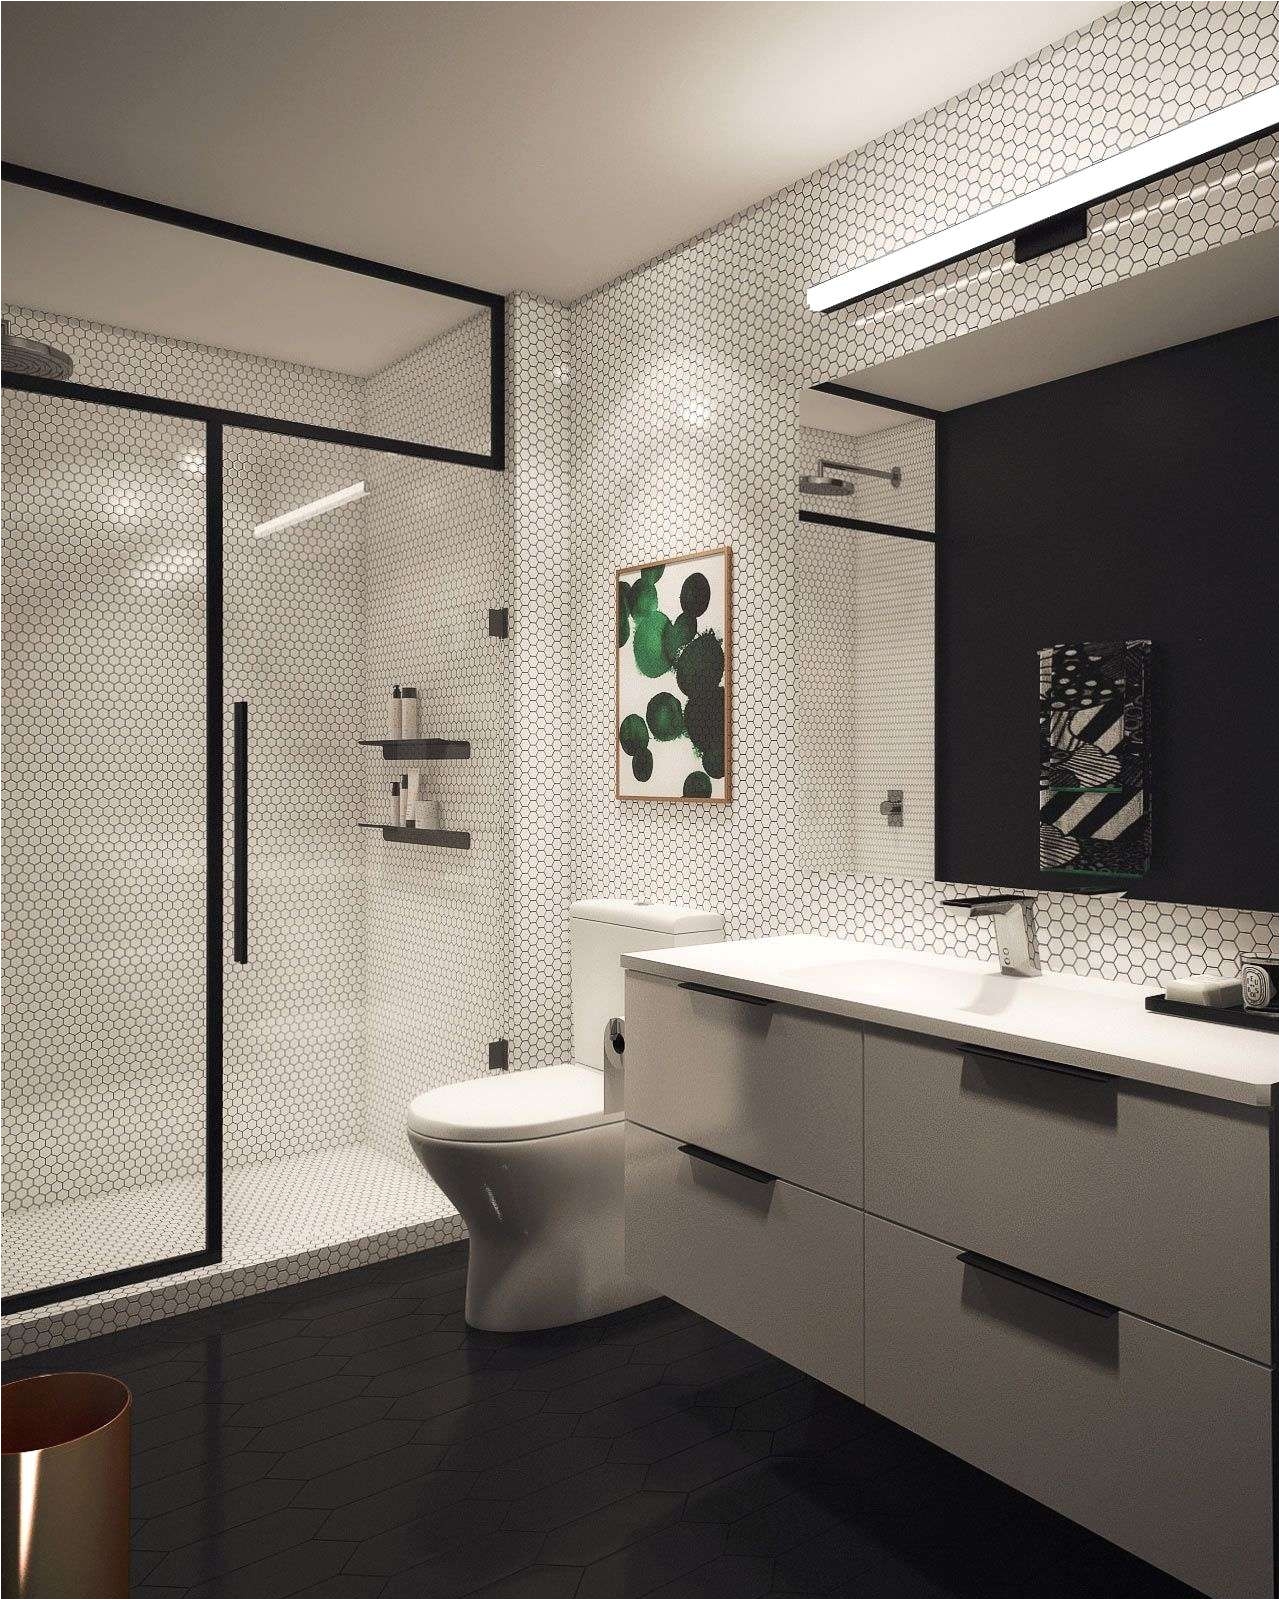 Tile Design Ideas for Bathroom Wall Magnificent Bathroom Wall Tile Ideas for Small Bathrooms Lovely